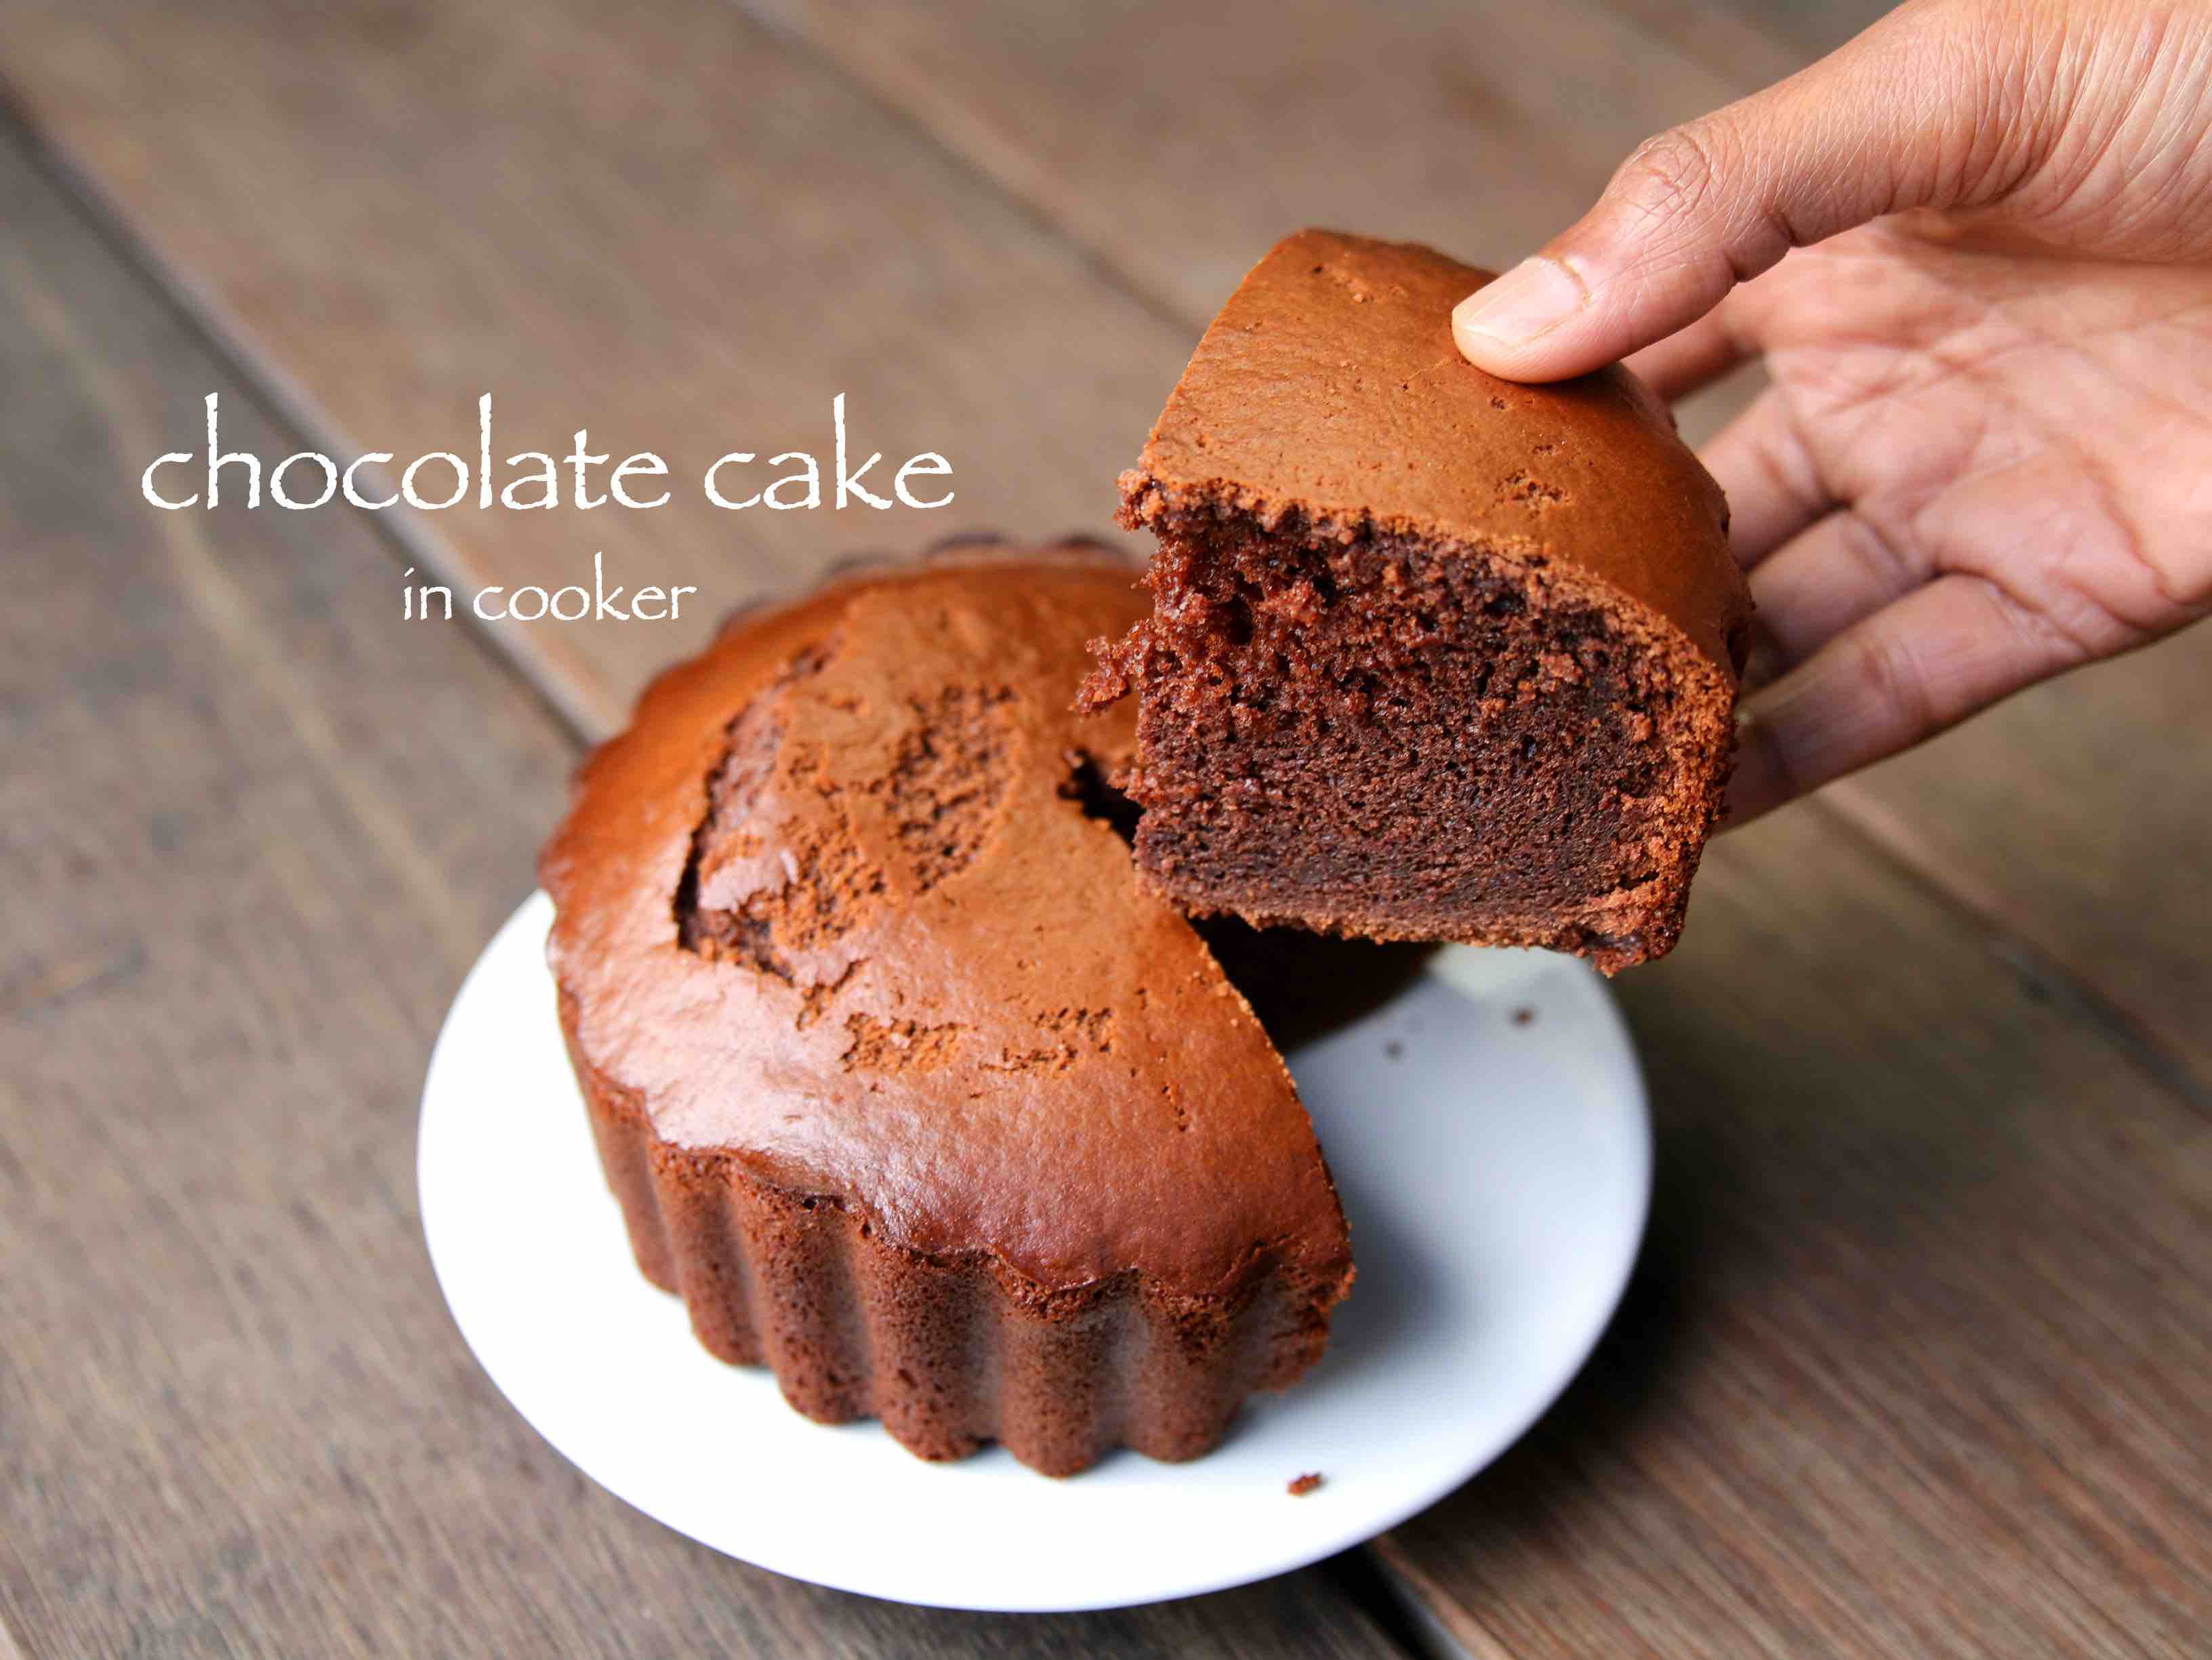 Birthday pe घर पर ही बनाएं सिर्फ तीन चीजों से चॉकलेटी केक - rprecipe